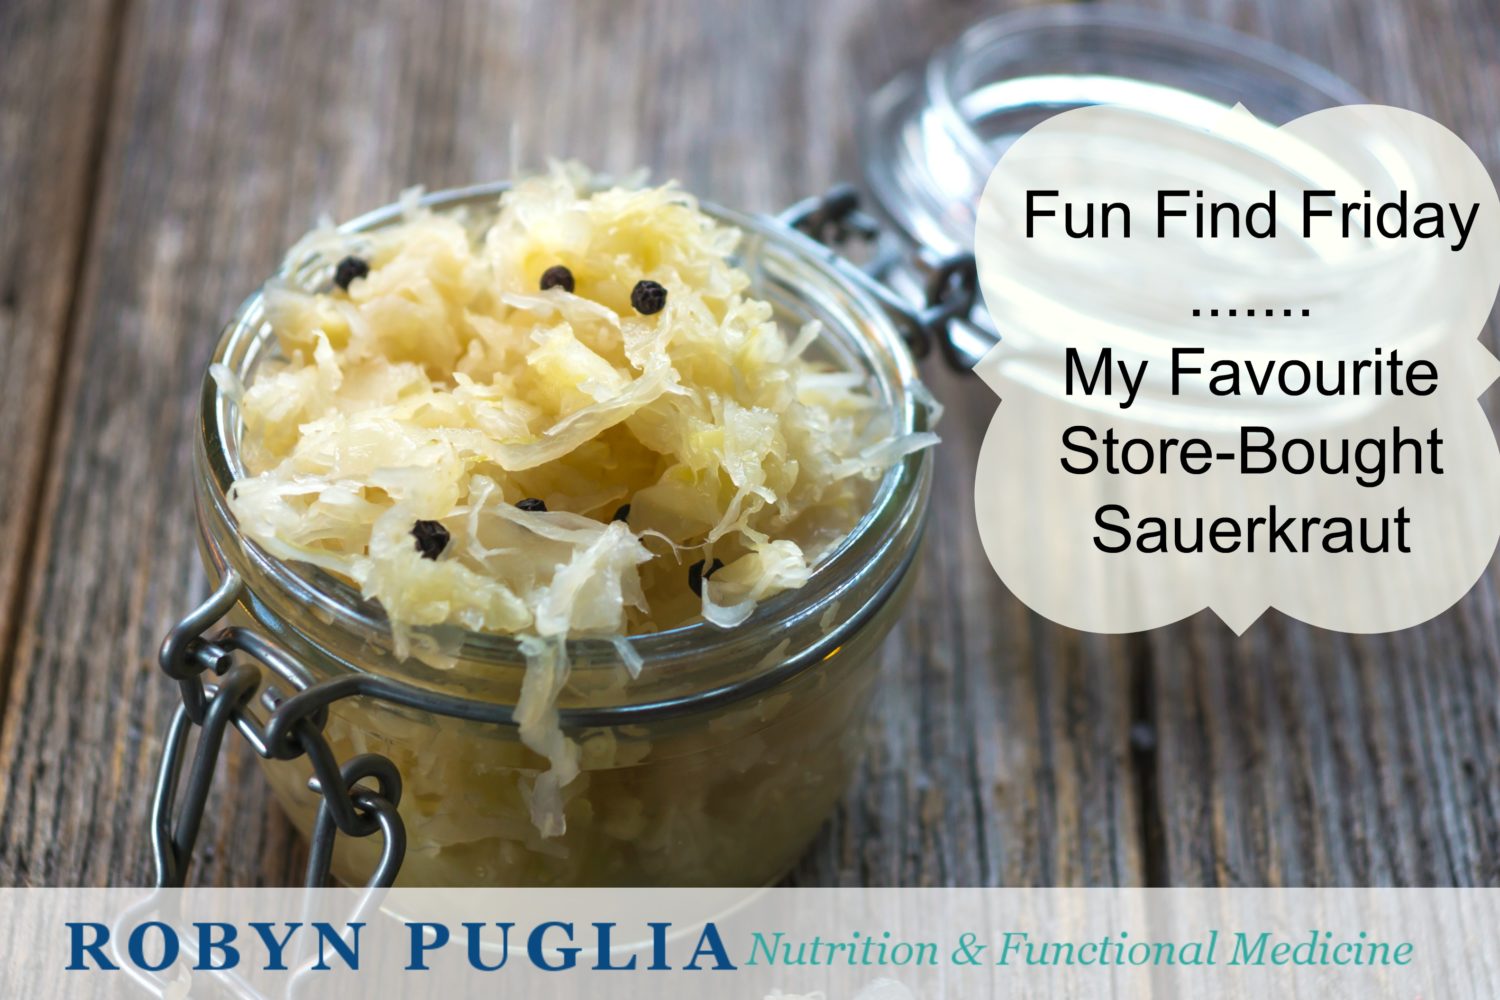 Fun Find Friday - Sauerkraut!